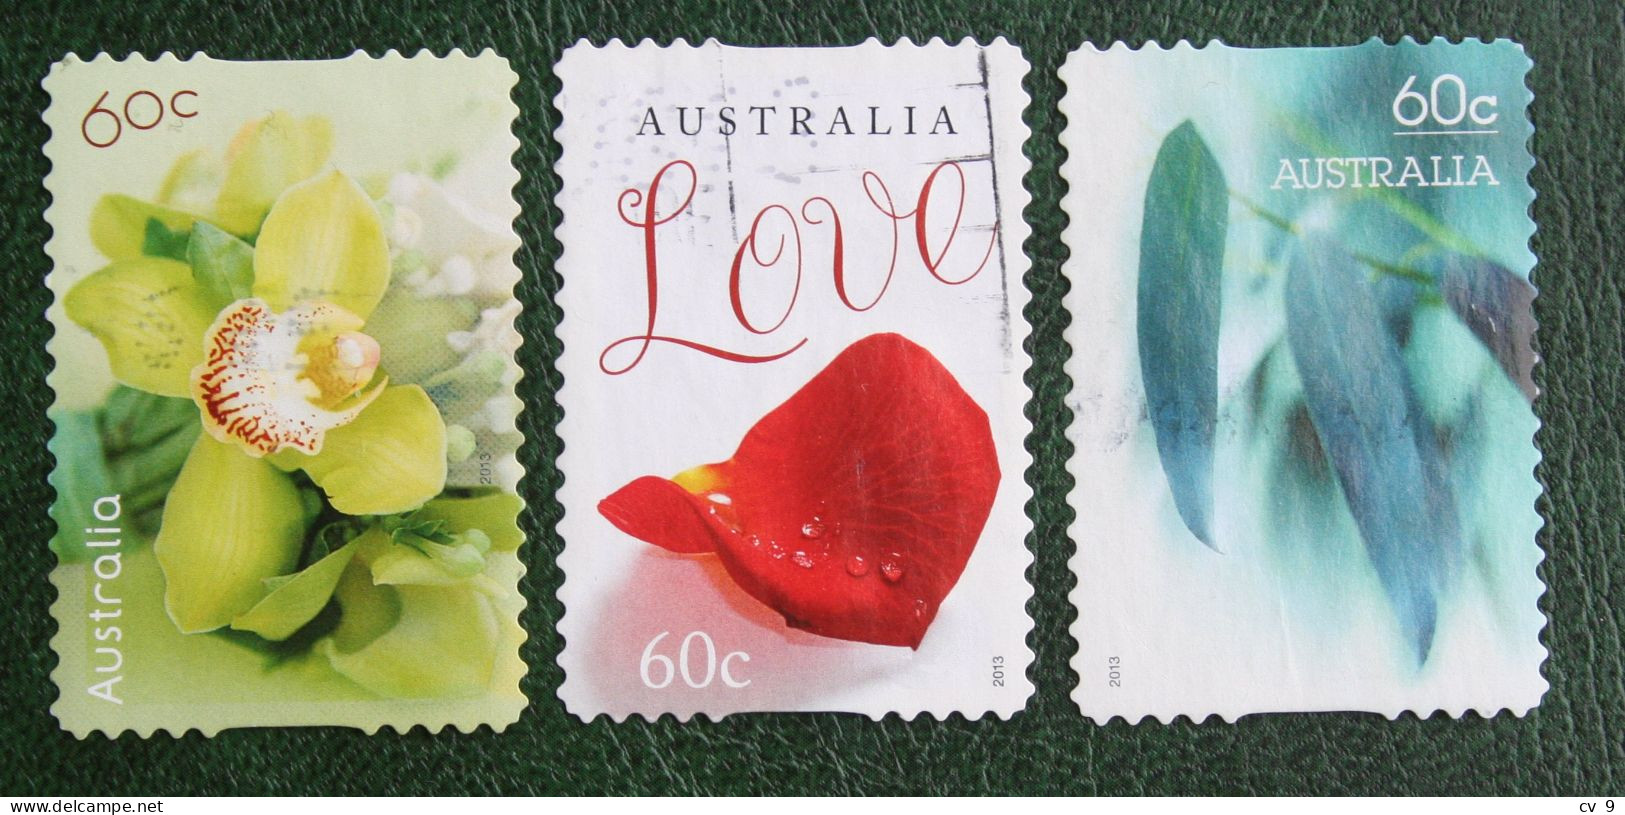 Greeting Stamps 2013 Mi 3885 3888 3889 Y&T Used Gebruikt Oblitere Australia Australien Australie - Used Stamps